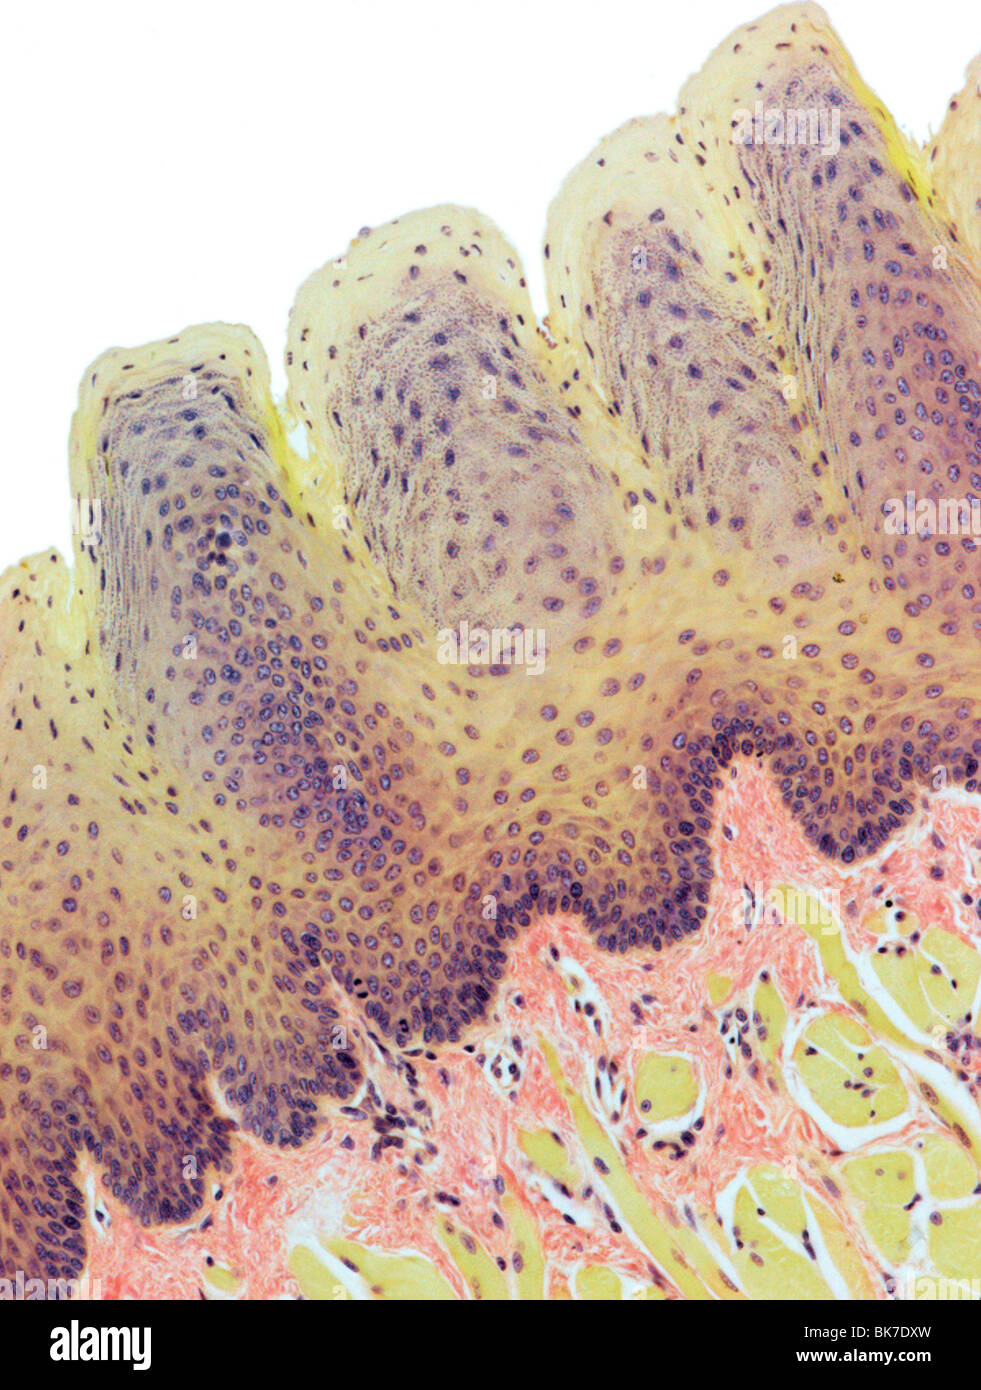 Tongue, light micrograph Stock Photo